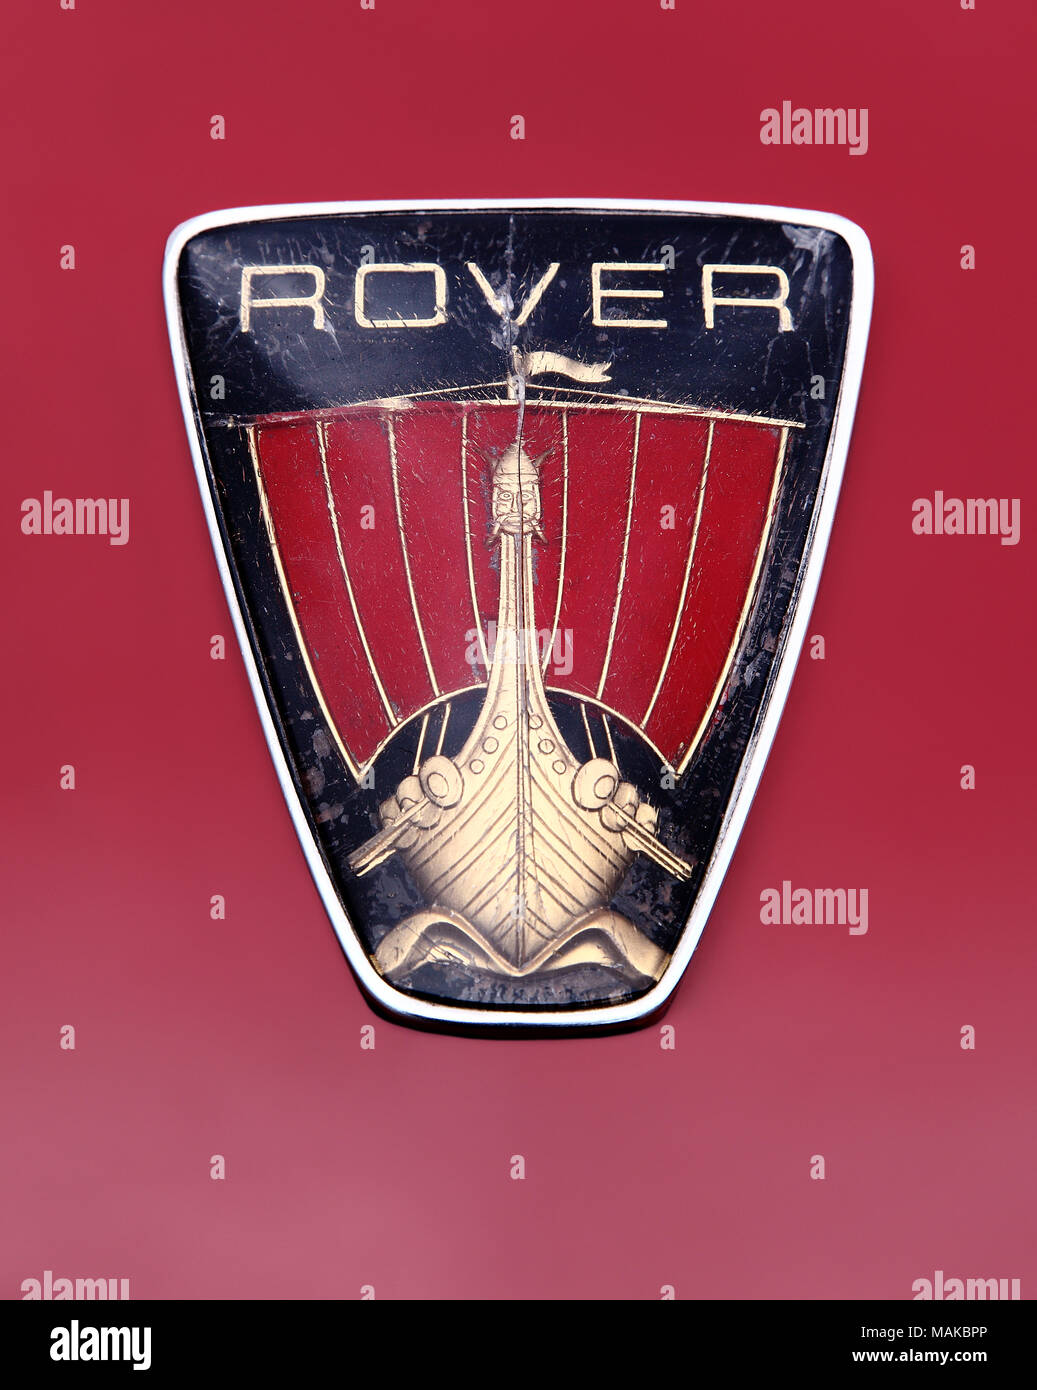 Rover viking ship, d'un insigne ou logo hood ornament montrant des décennies de l'usure. Banque D'Images